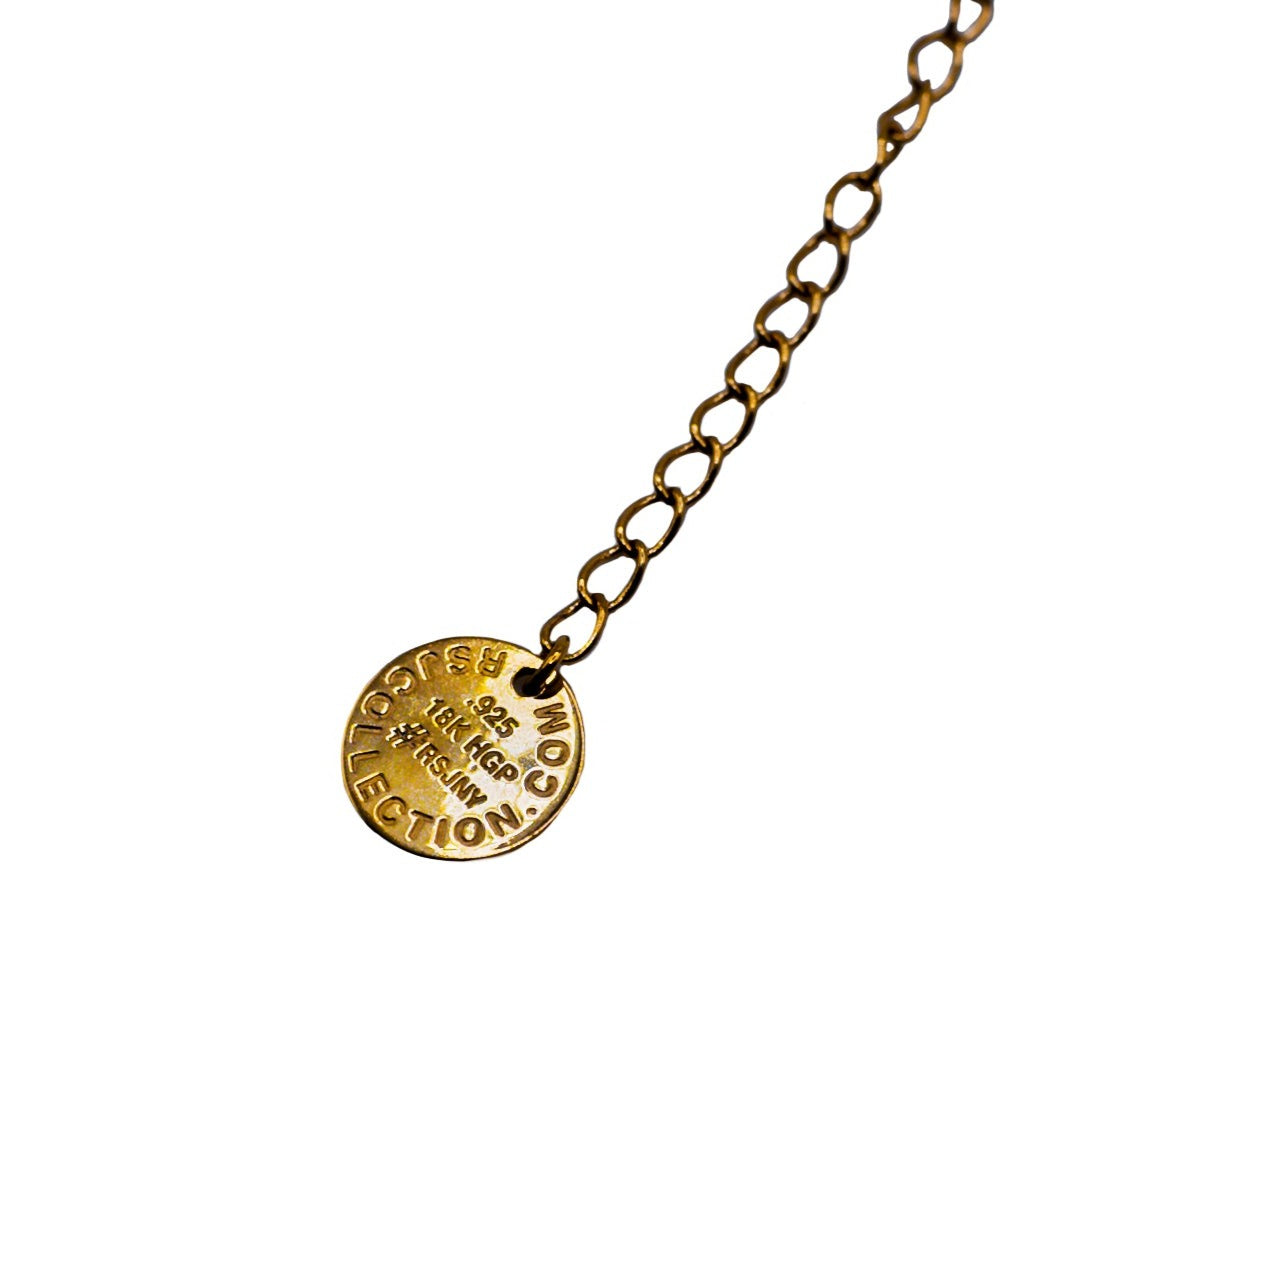 Rose Quartz pendant in 18k gold vermeil-RSJ Collection LLC